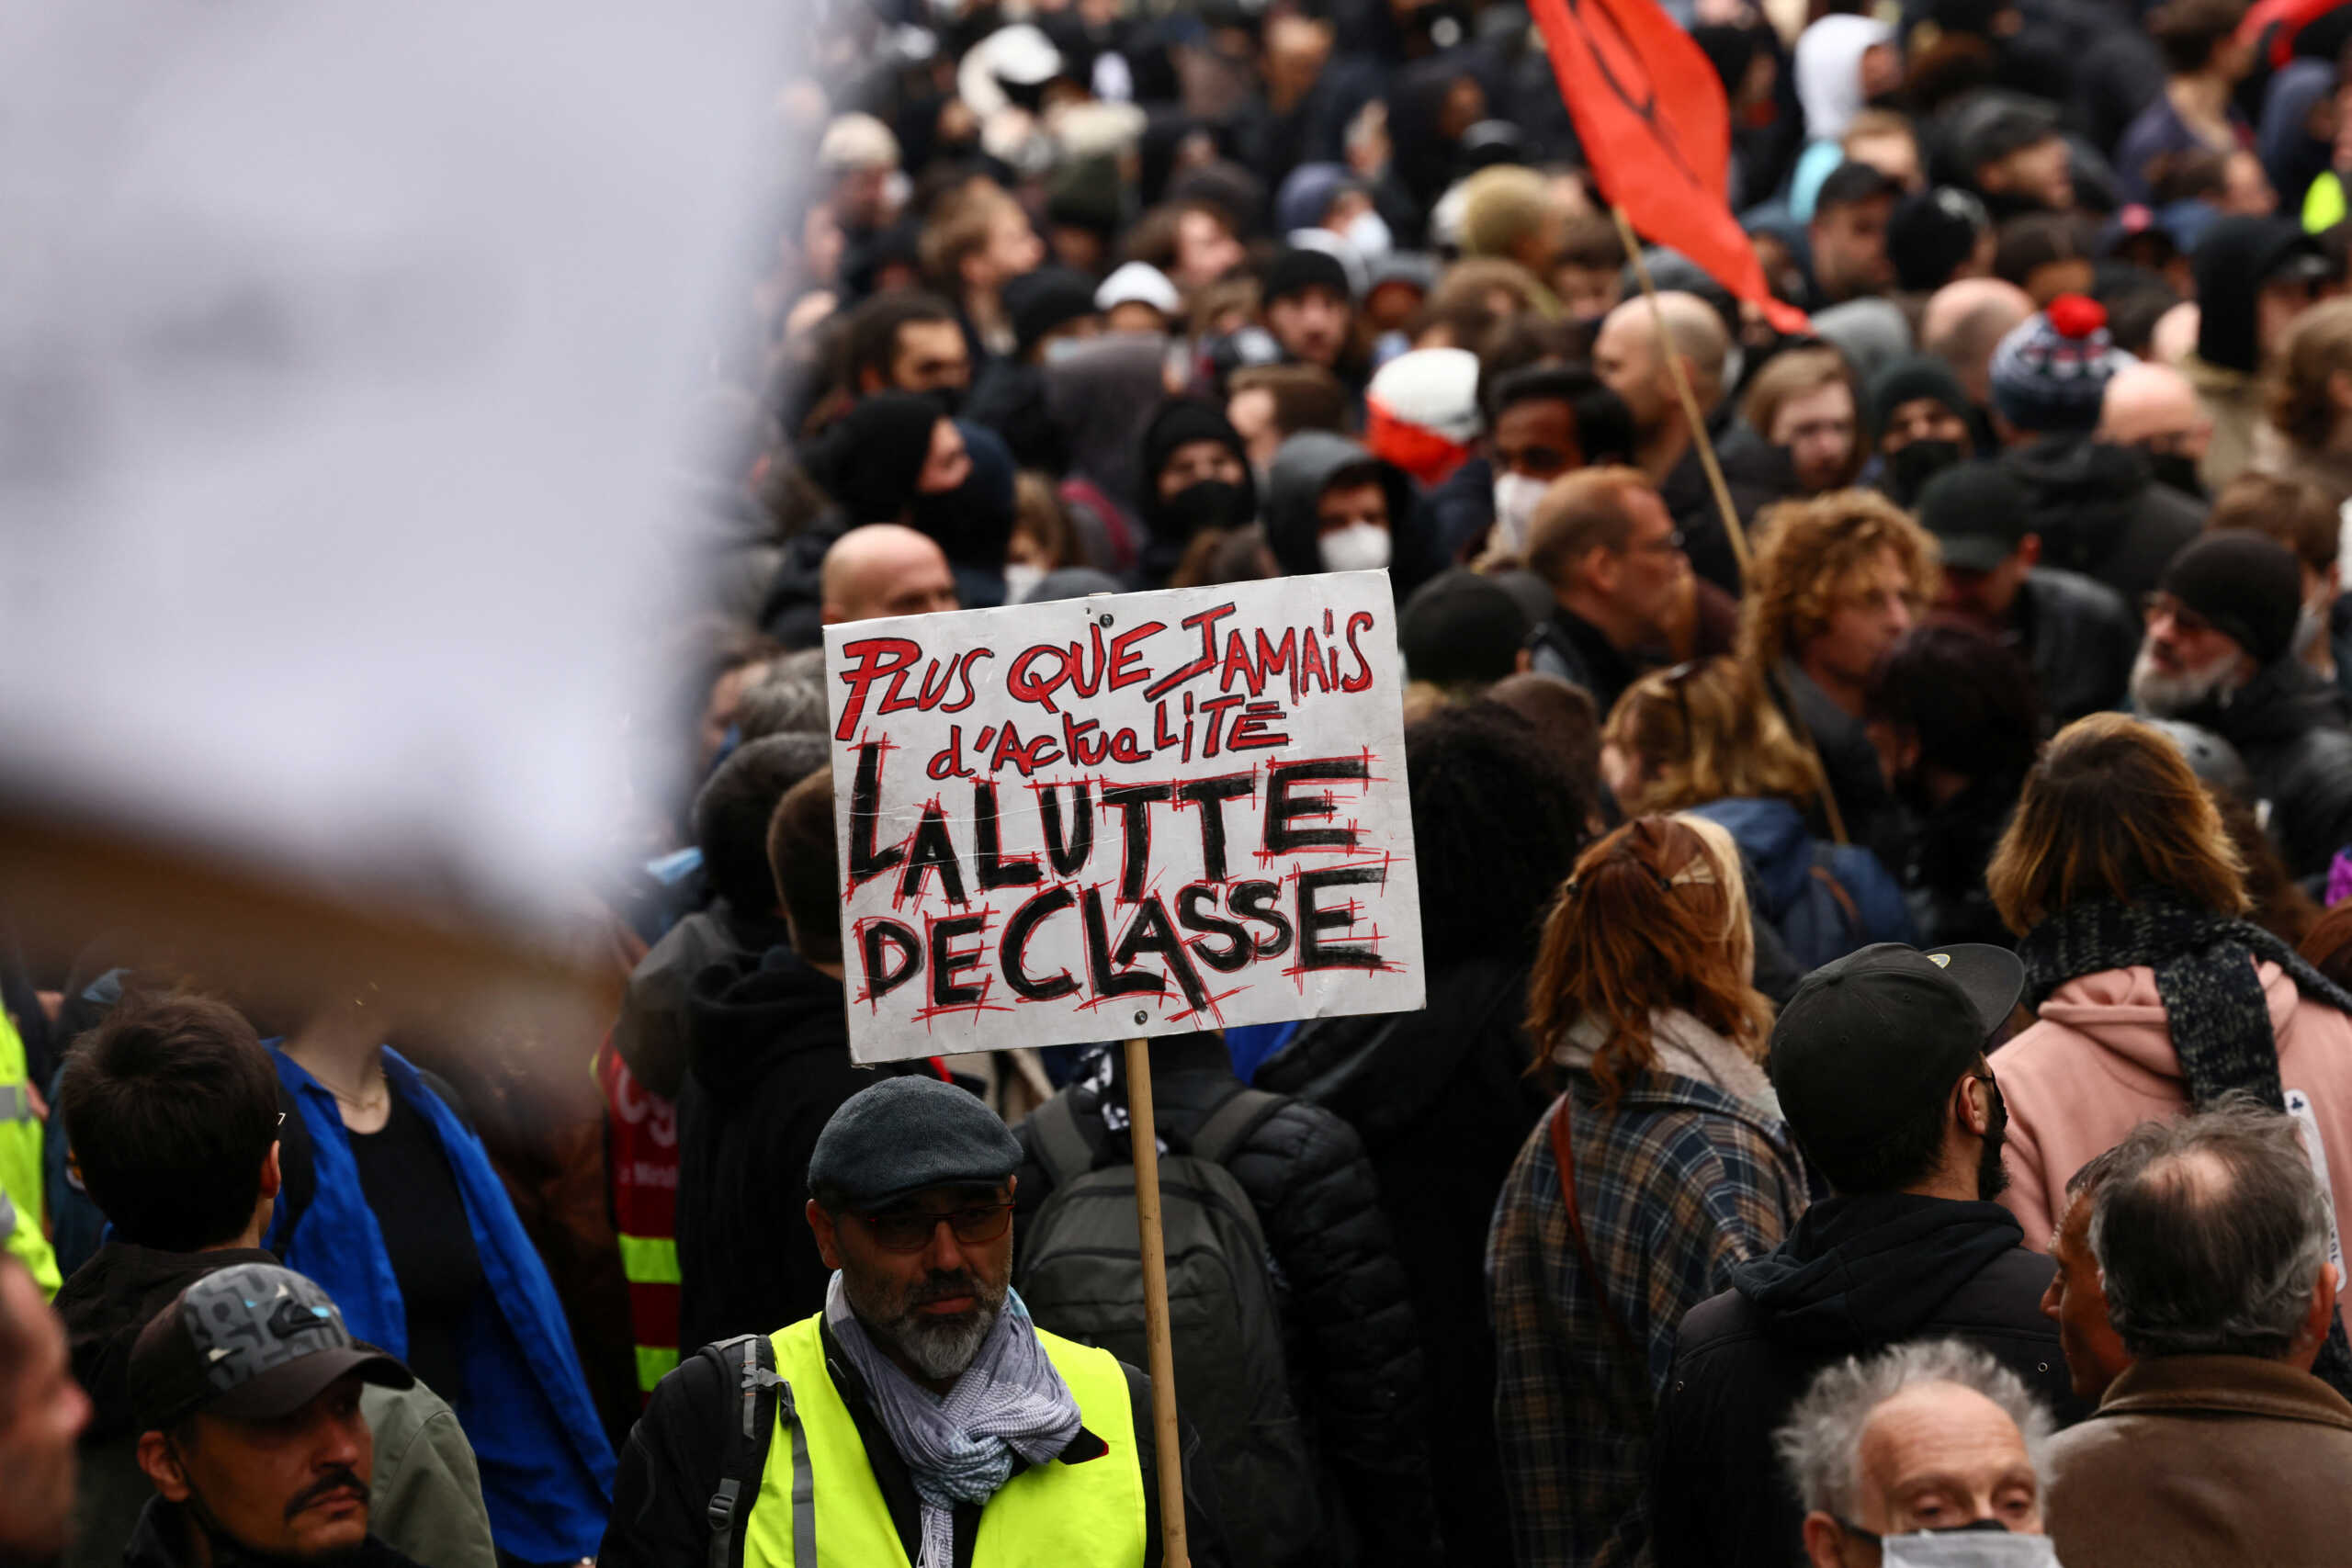 Γαλλία: Περιμένουν ακόμα και 900.000 στις διαδηλώσεις για το συνταξιοδοτικό, στέλνουν 5.500 αστυνομικούς στο Παρίσι